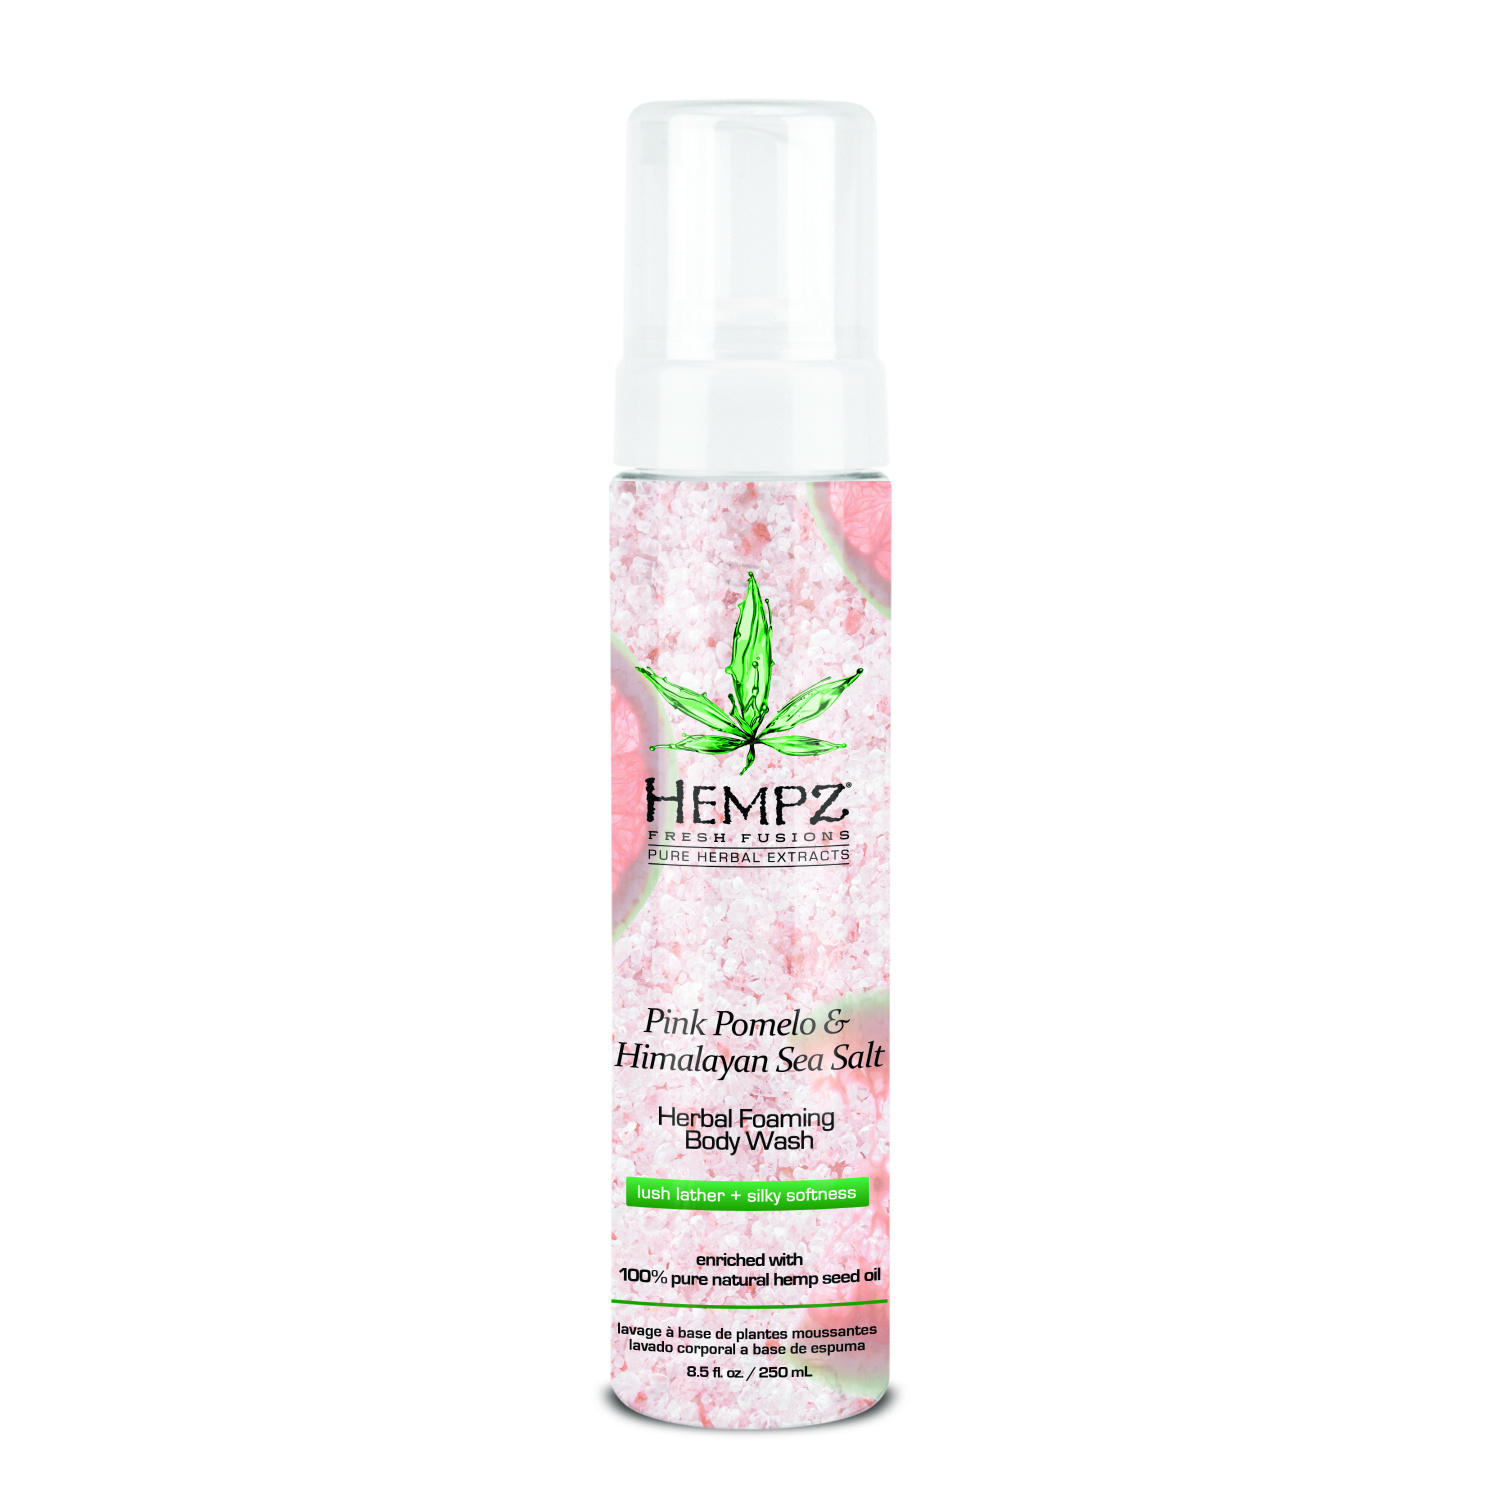 Hempz Pink Pomelo & Himalayan Sea Salt Herbal Foaming Body Wash 250ml - интернет-магазин профессиональной косметики Spadream, изображение 26881